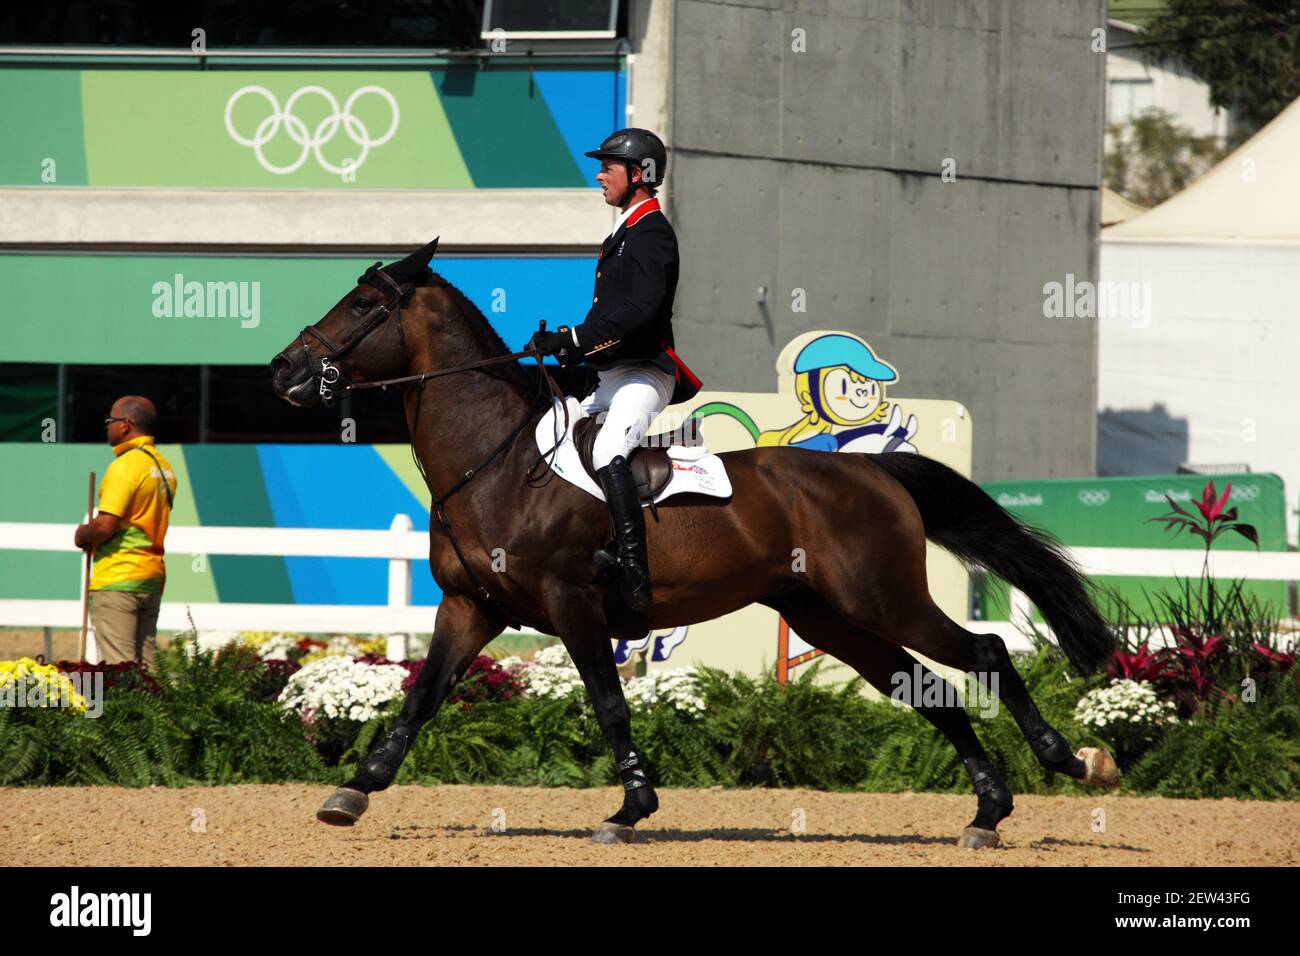 Ben Maher de Gran Bretaña montando Tic TAC en los Juegos Olímpicos de 2016 en Río de Janeiro, Brasil Foto de stock